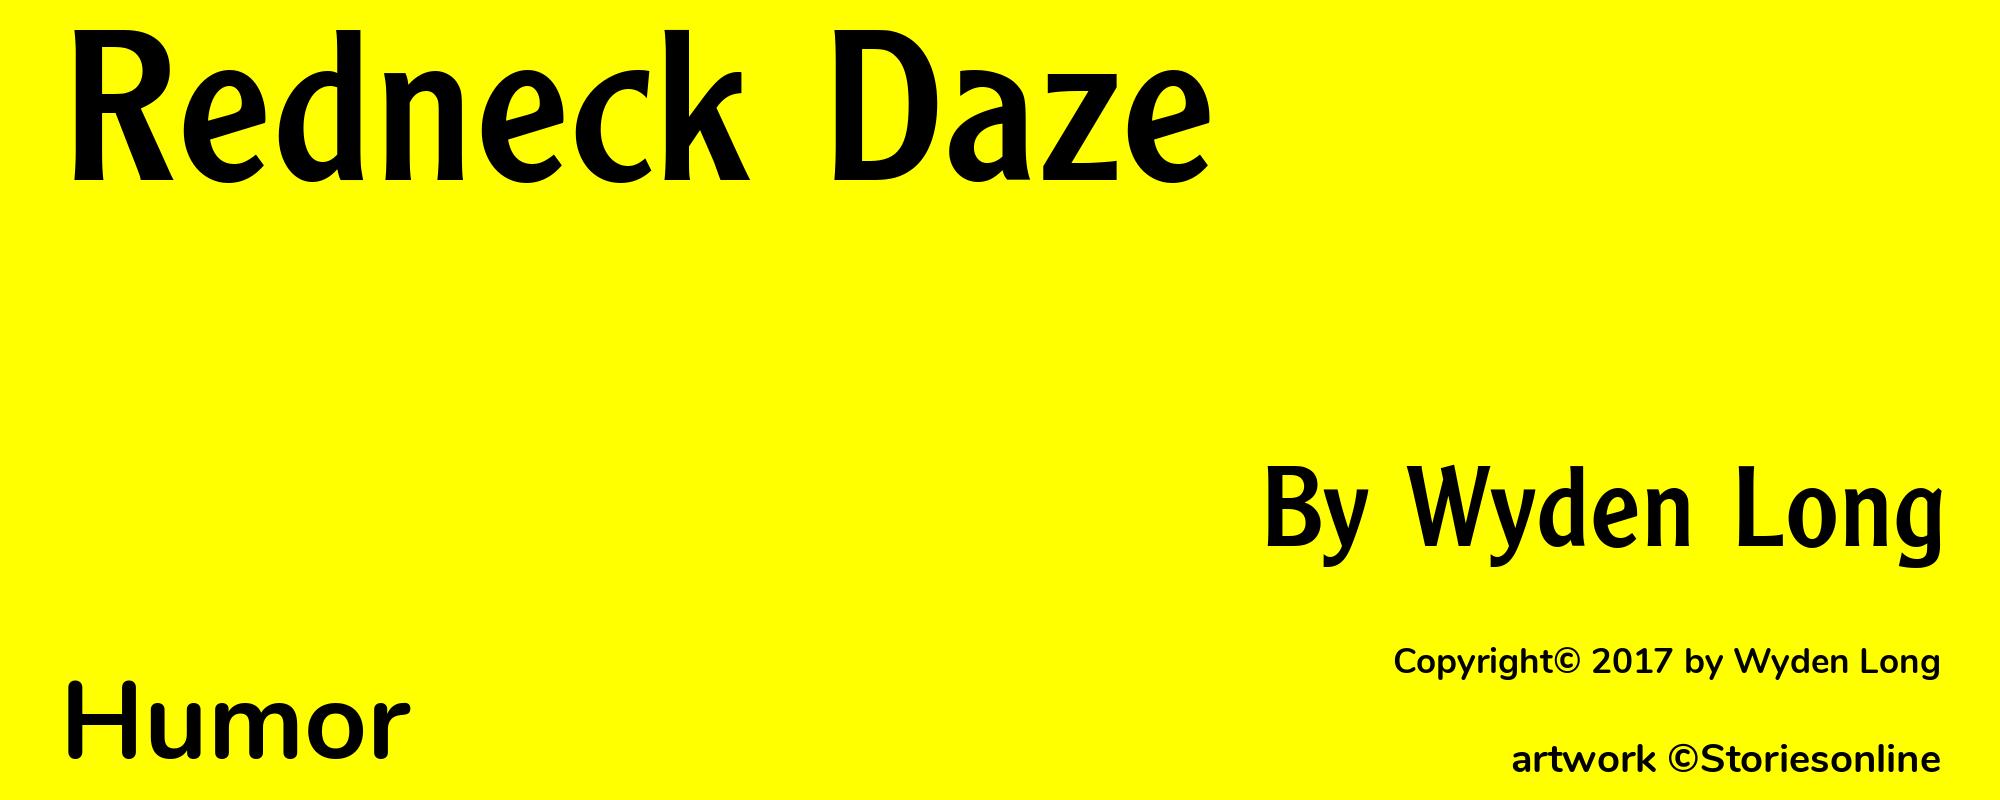 Redneck Daze - Cover